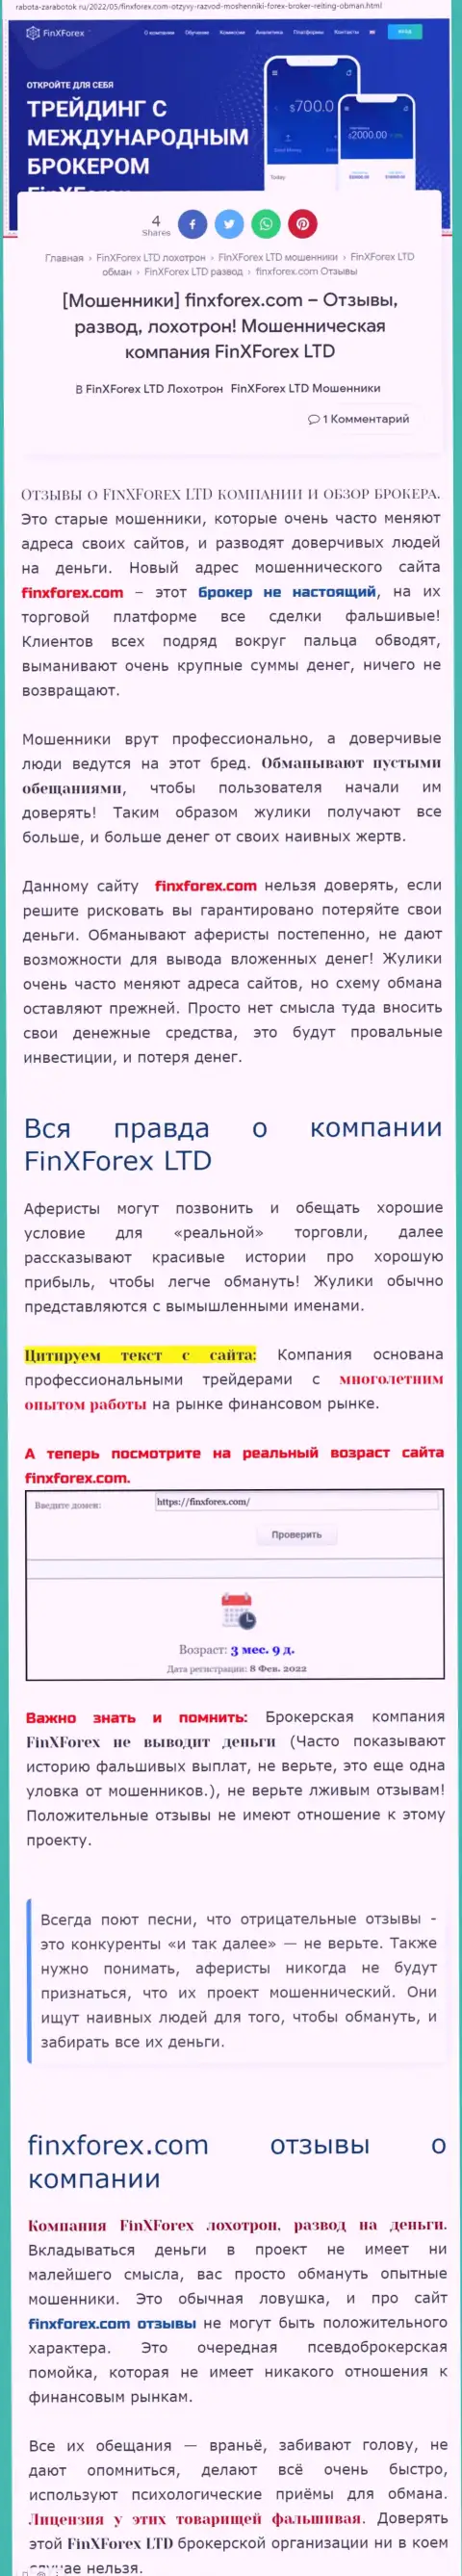 Автор обзорной публикации о FinXForex говорит, что в компании FinXForex LTD лохотронят